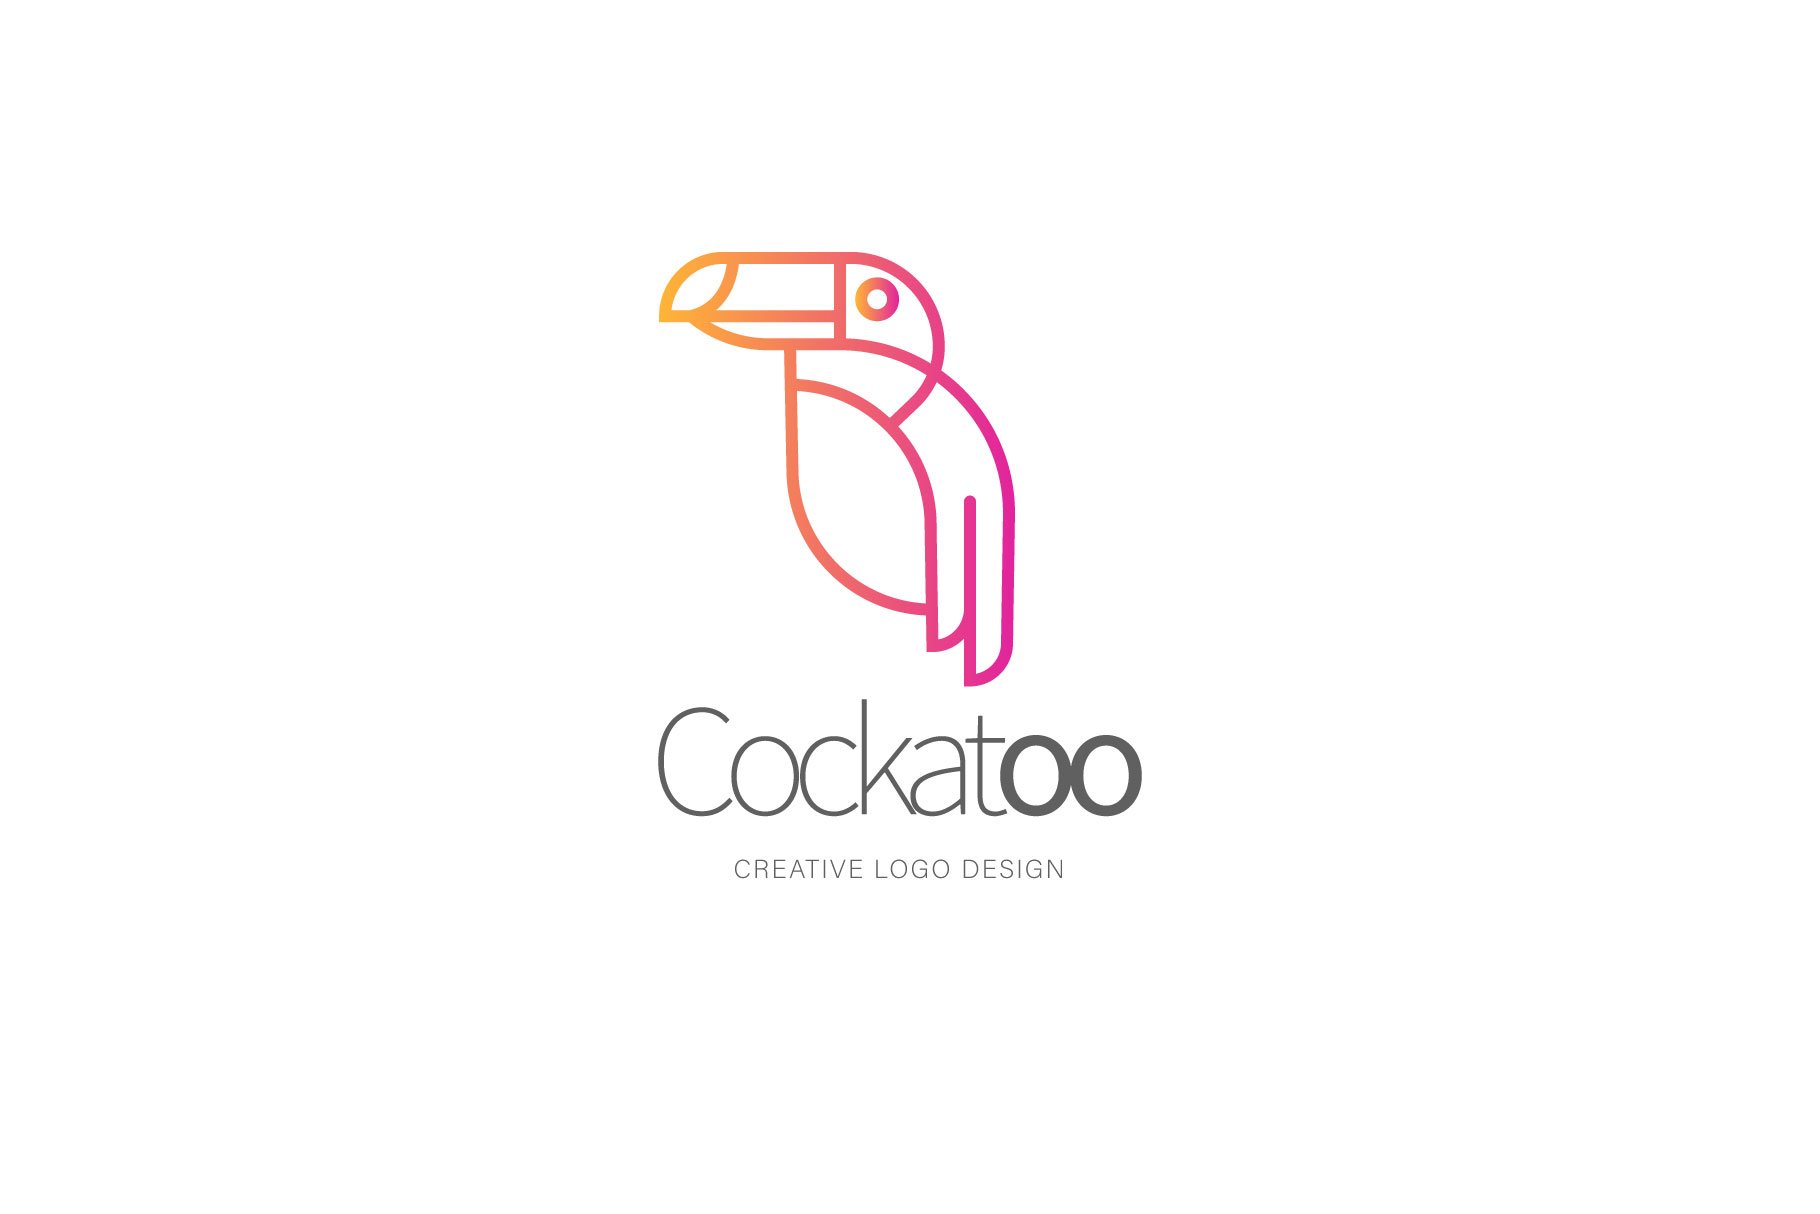 Cockatoo logo cover image.